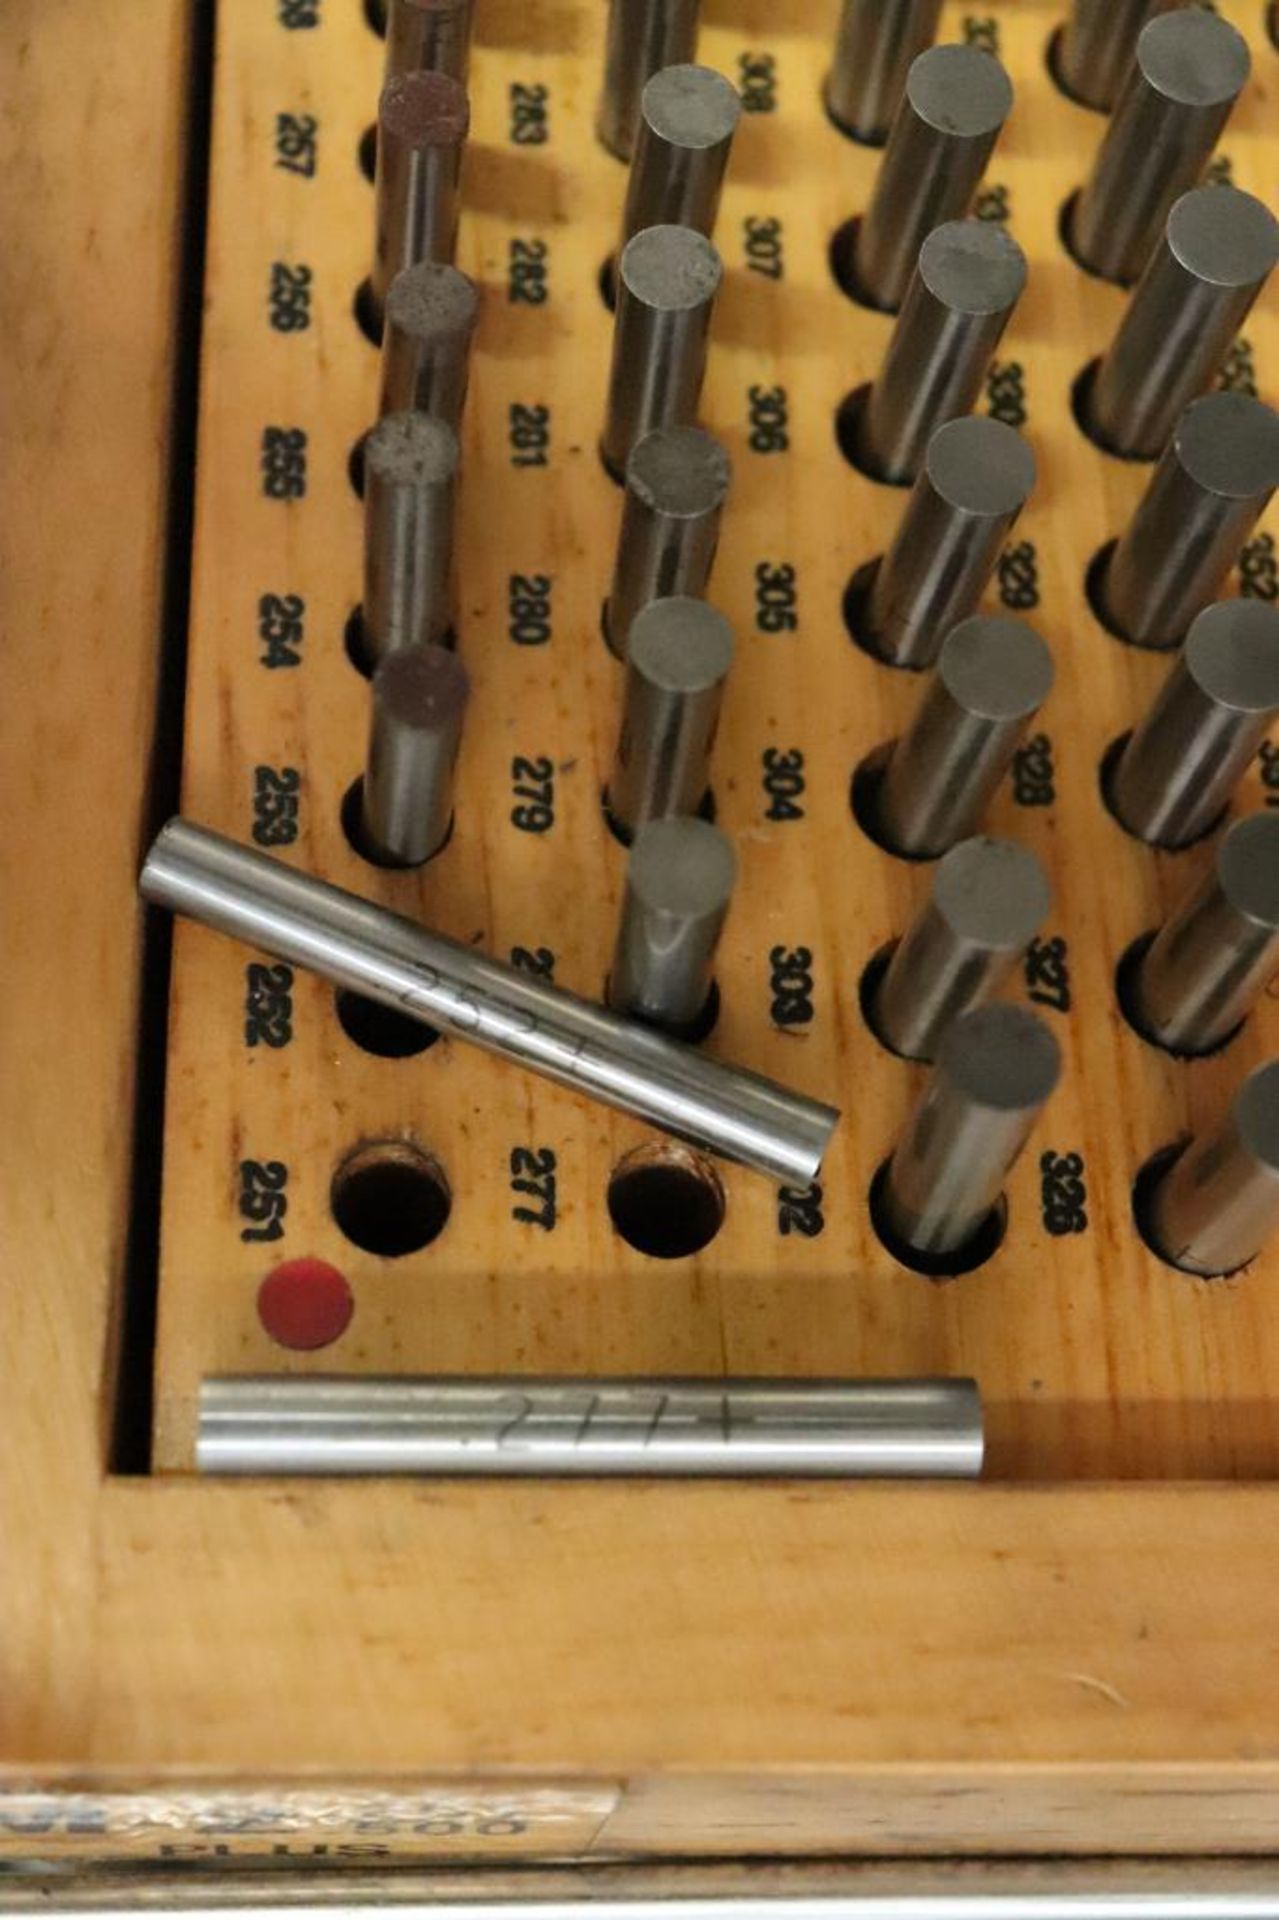 Meyer pin gage set, model M-2, 0.251-0.500" PLUS Range - Image 4 of 6